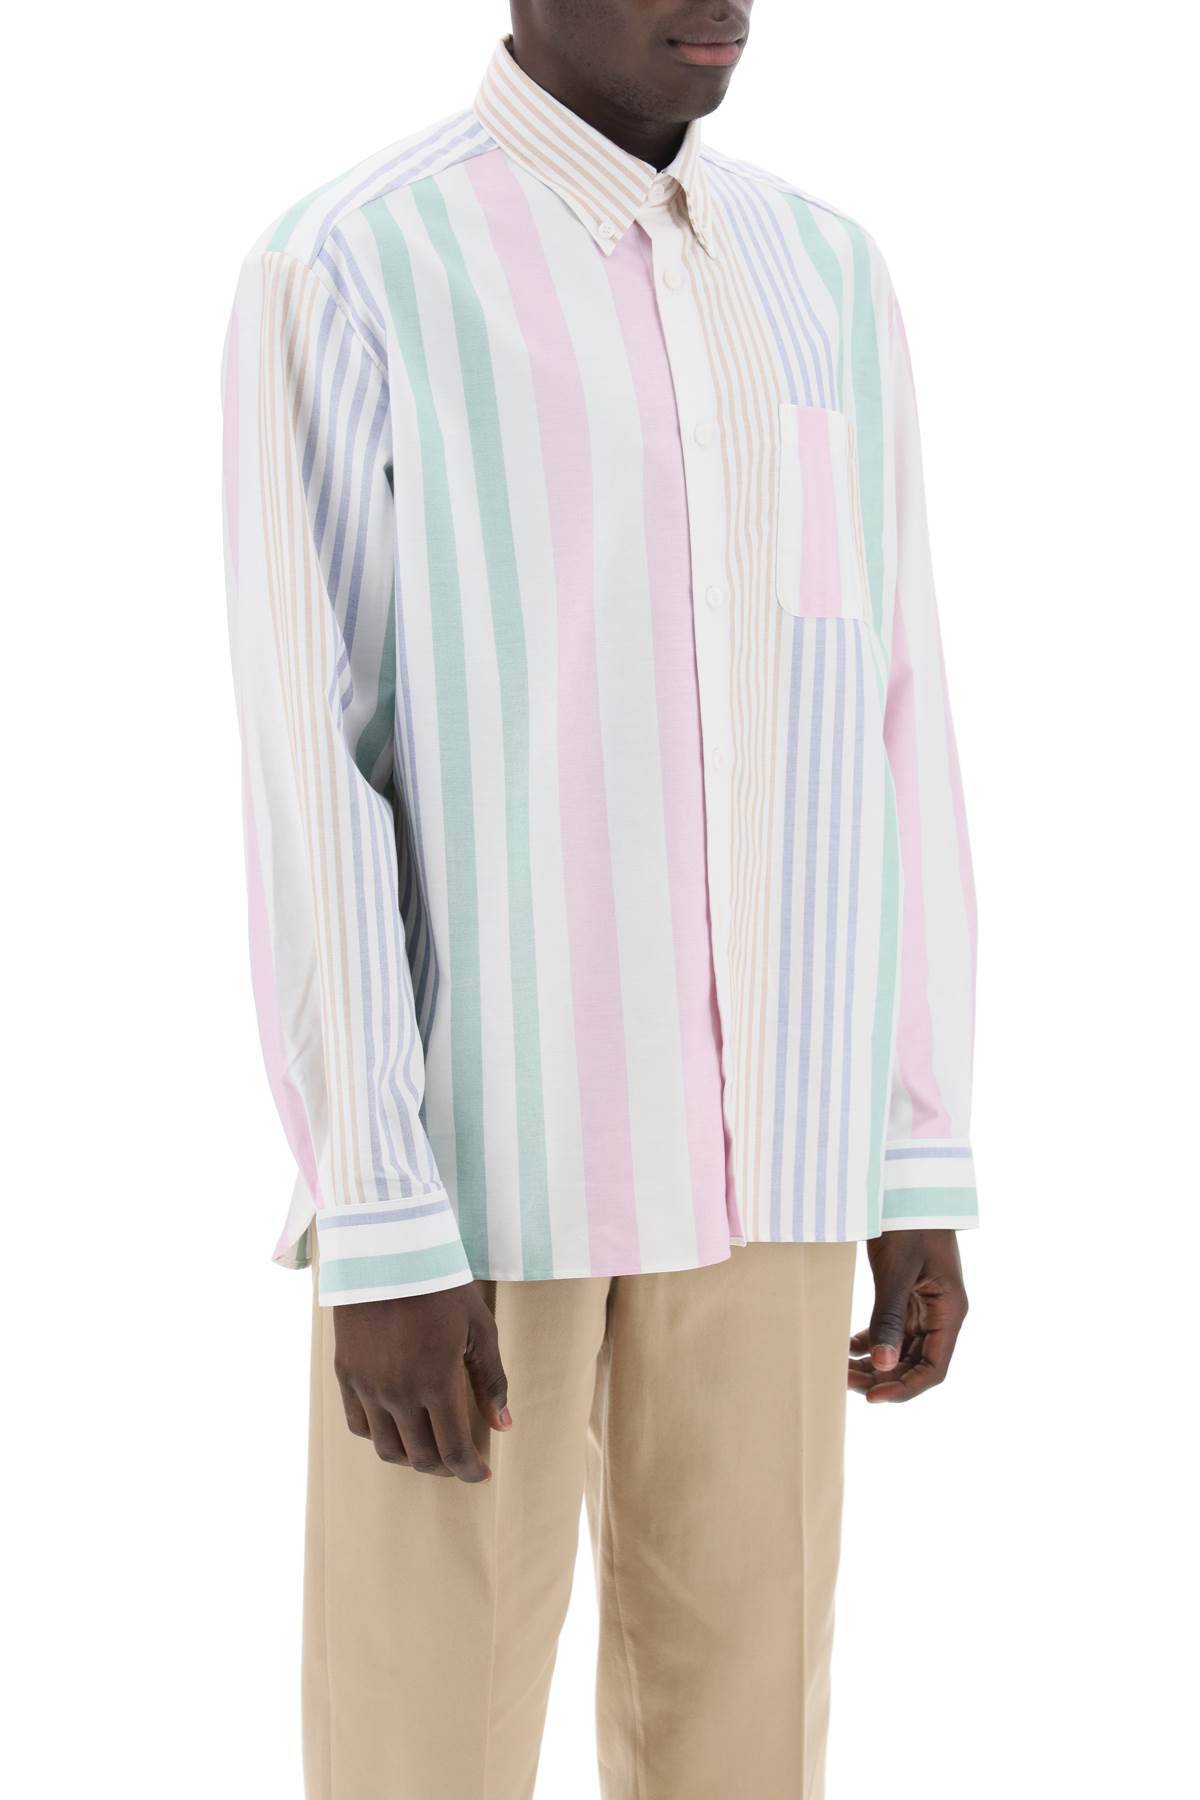 Shop Apc Mateo Striped Oxford Shirt In Multicolor